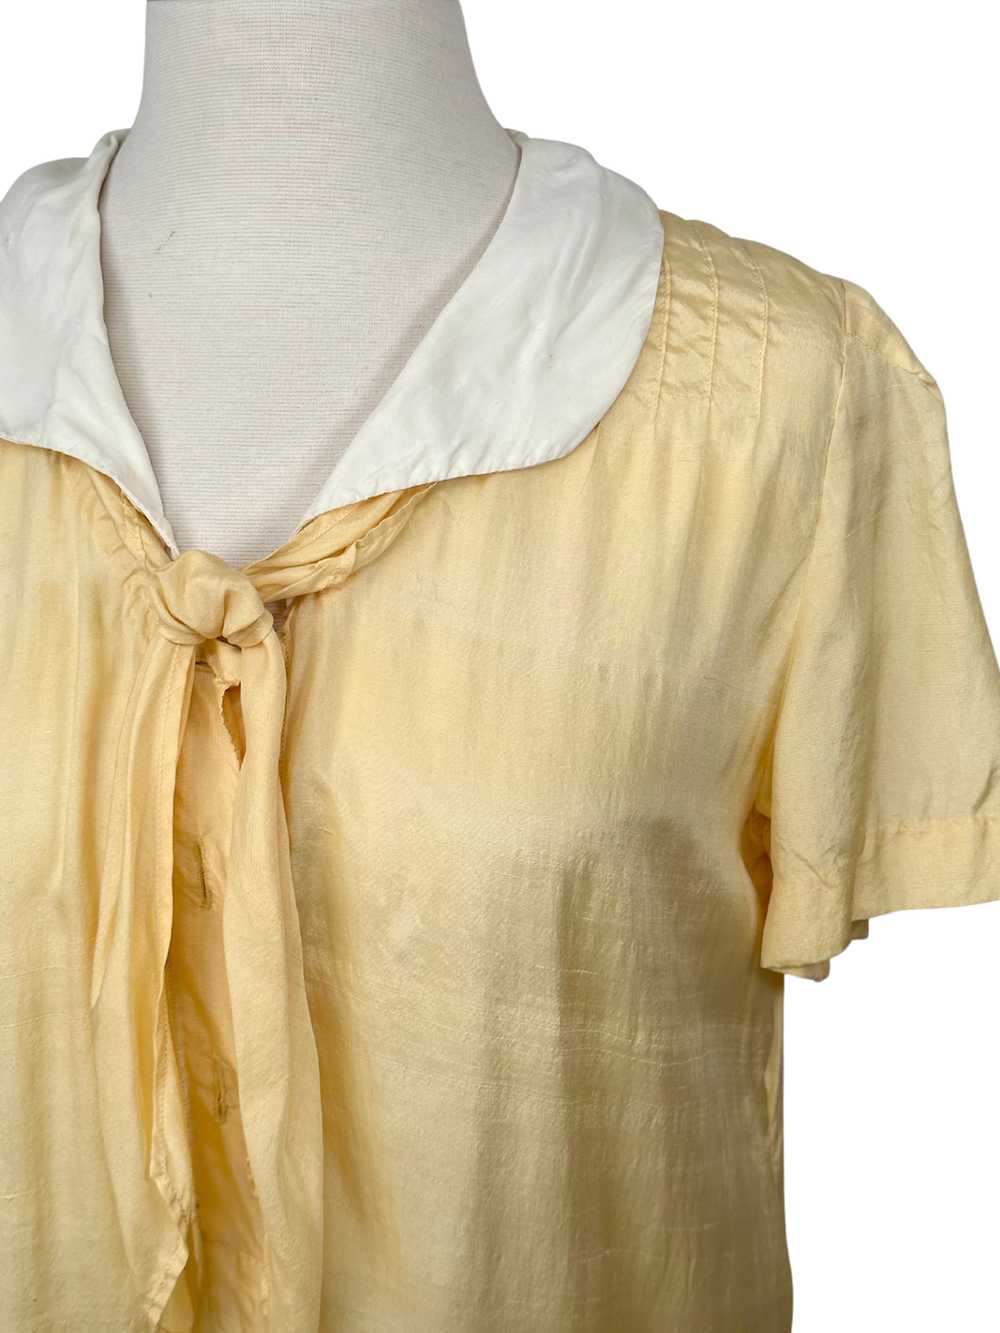 Vintage 1920s Yellow Cotton Flapper Dress - M - image 2